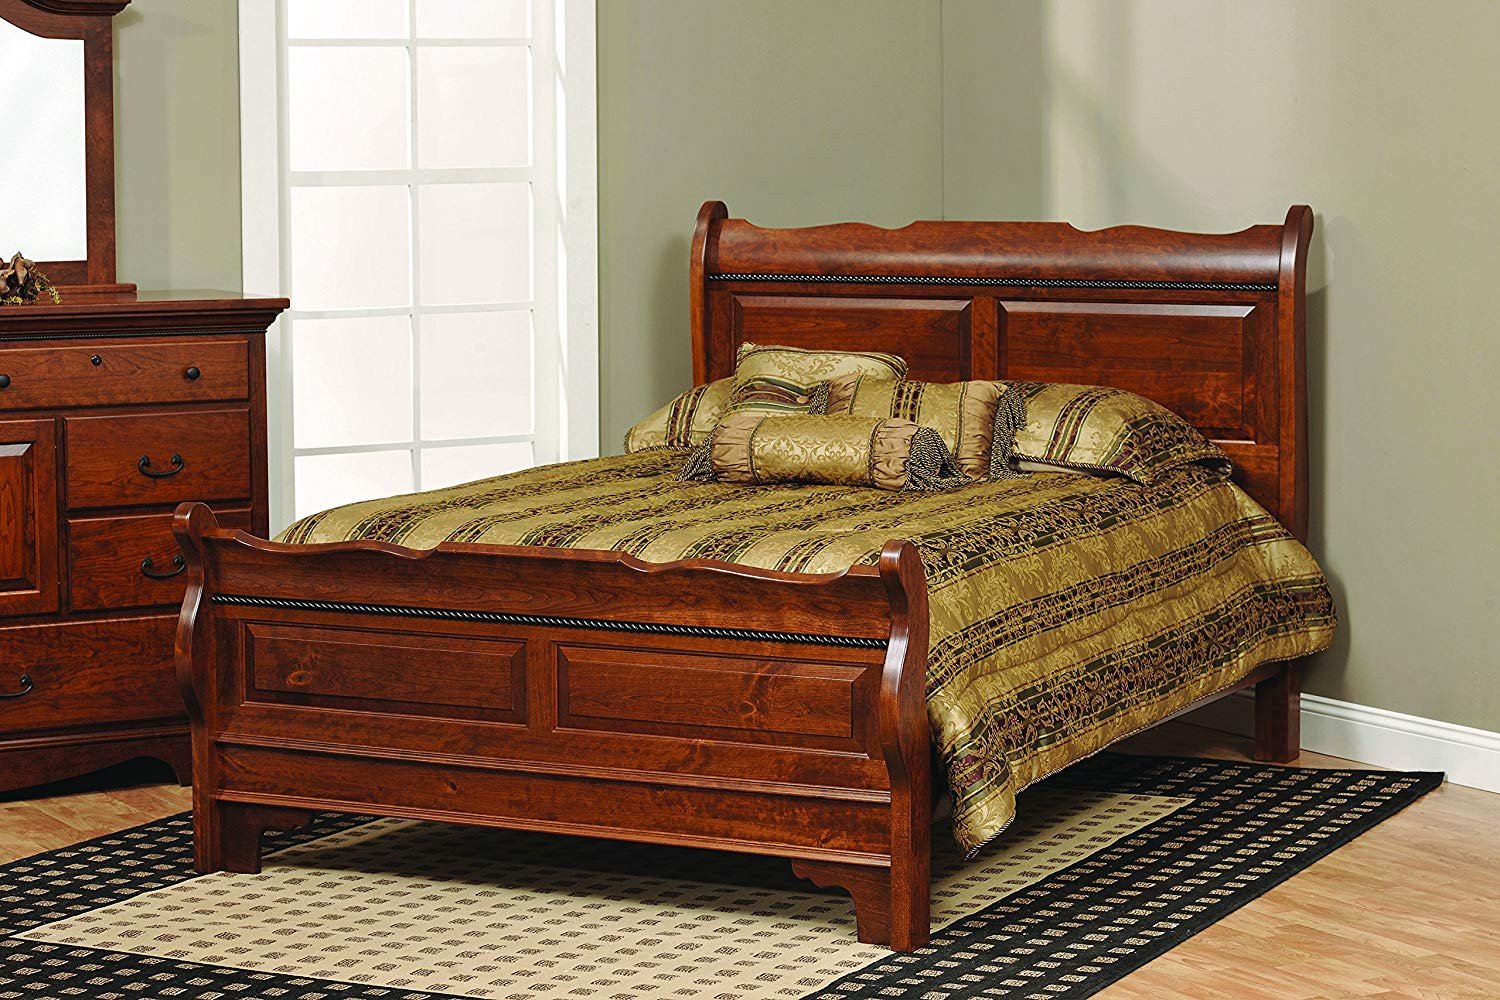 Solid Oak Bedroom Furniture Best Of Amazon Amish Merlot Queen solid Rustic Cherry Wood